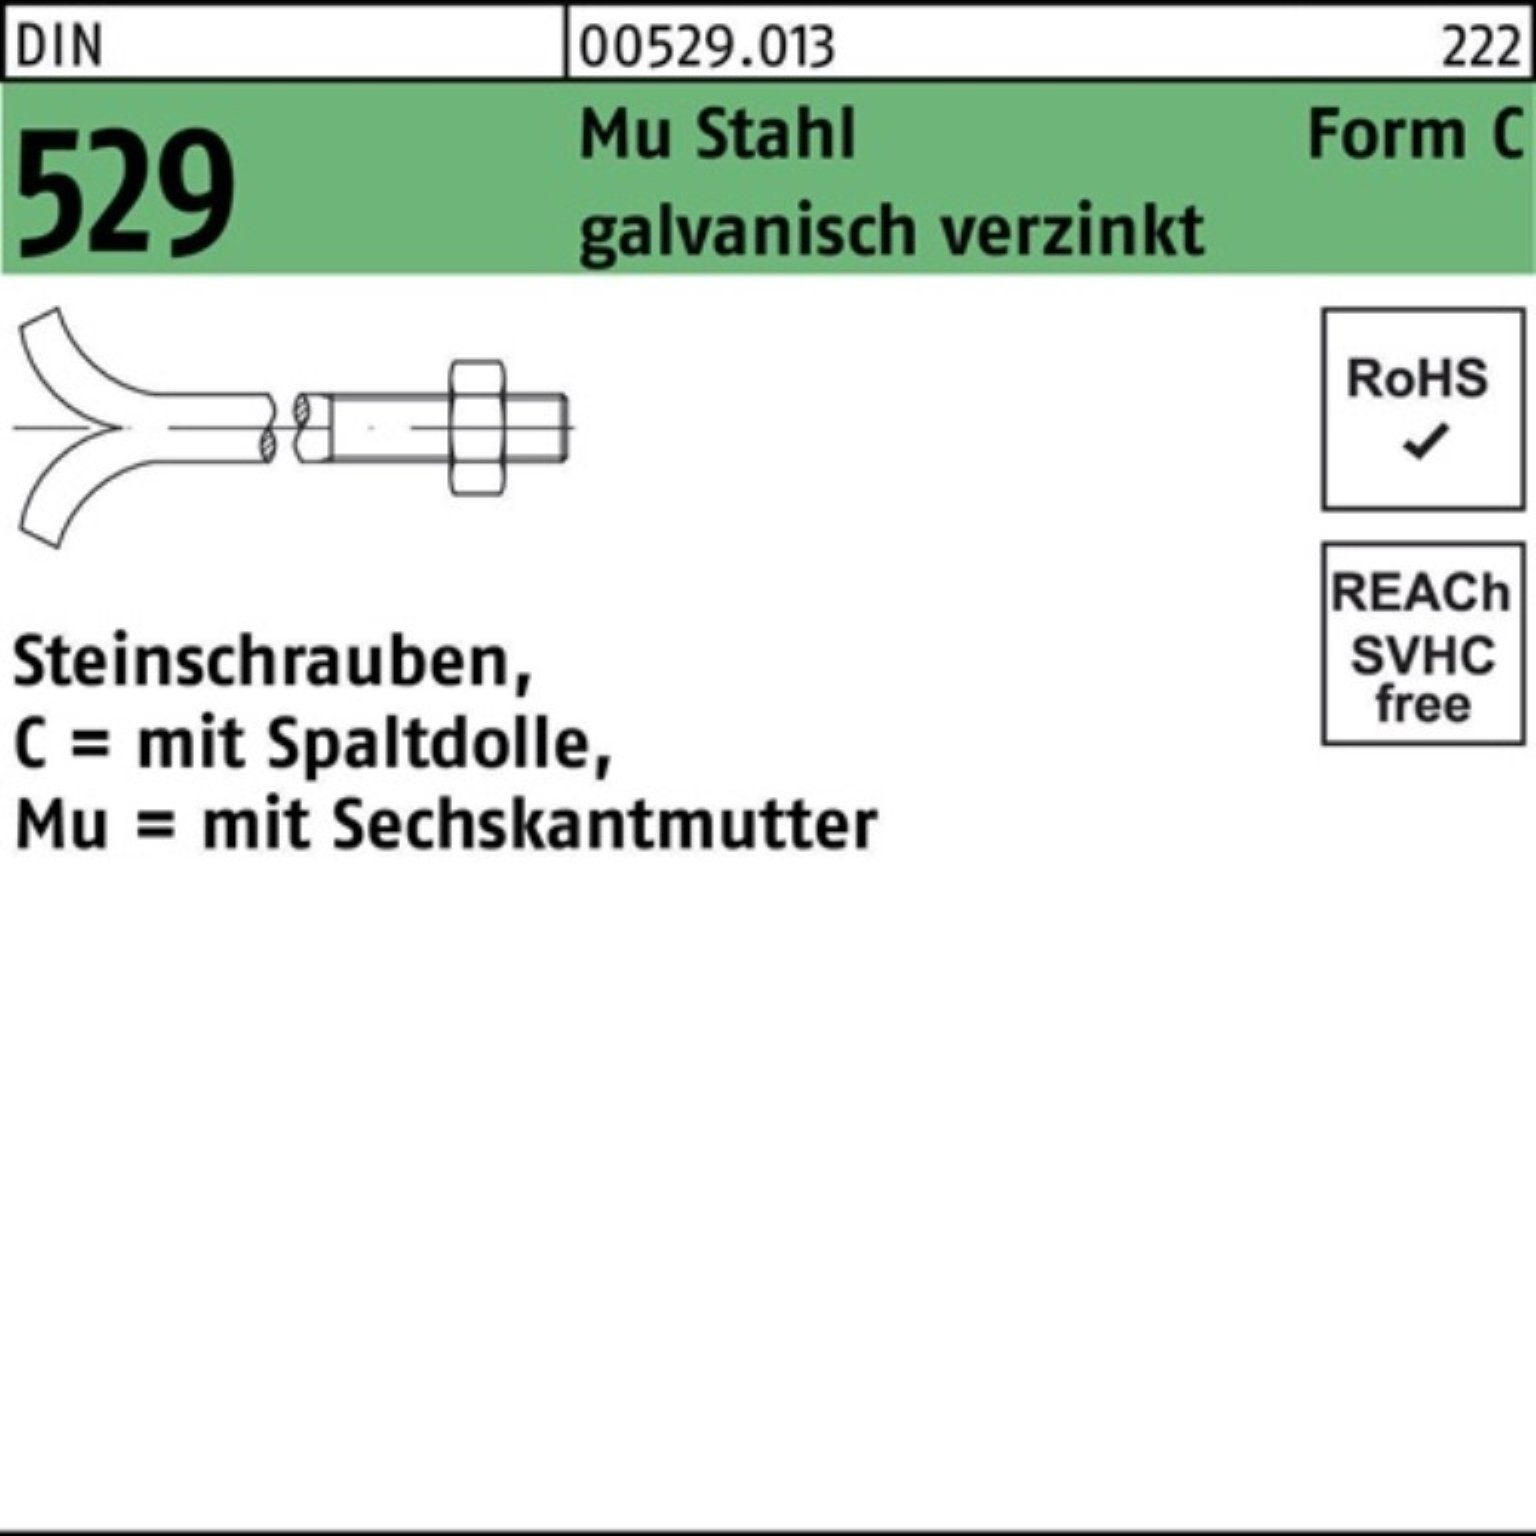 3.6 Schraube Reyher Mu Pack DIN 8x80 100er Steinschraube CM Spaltdolle/6-ktmutter 529